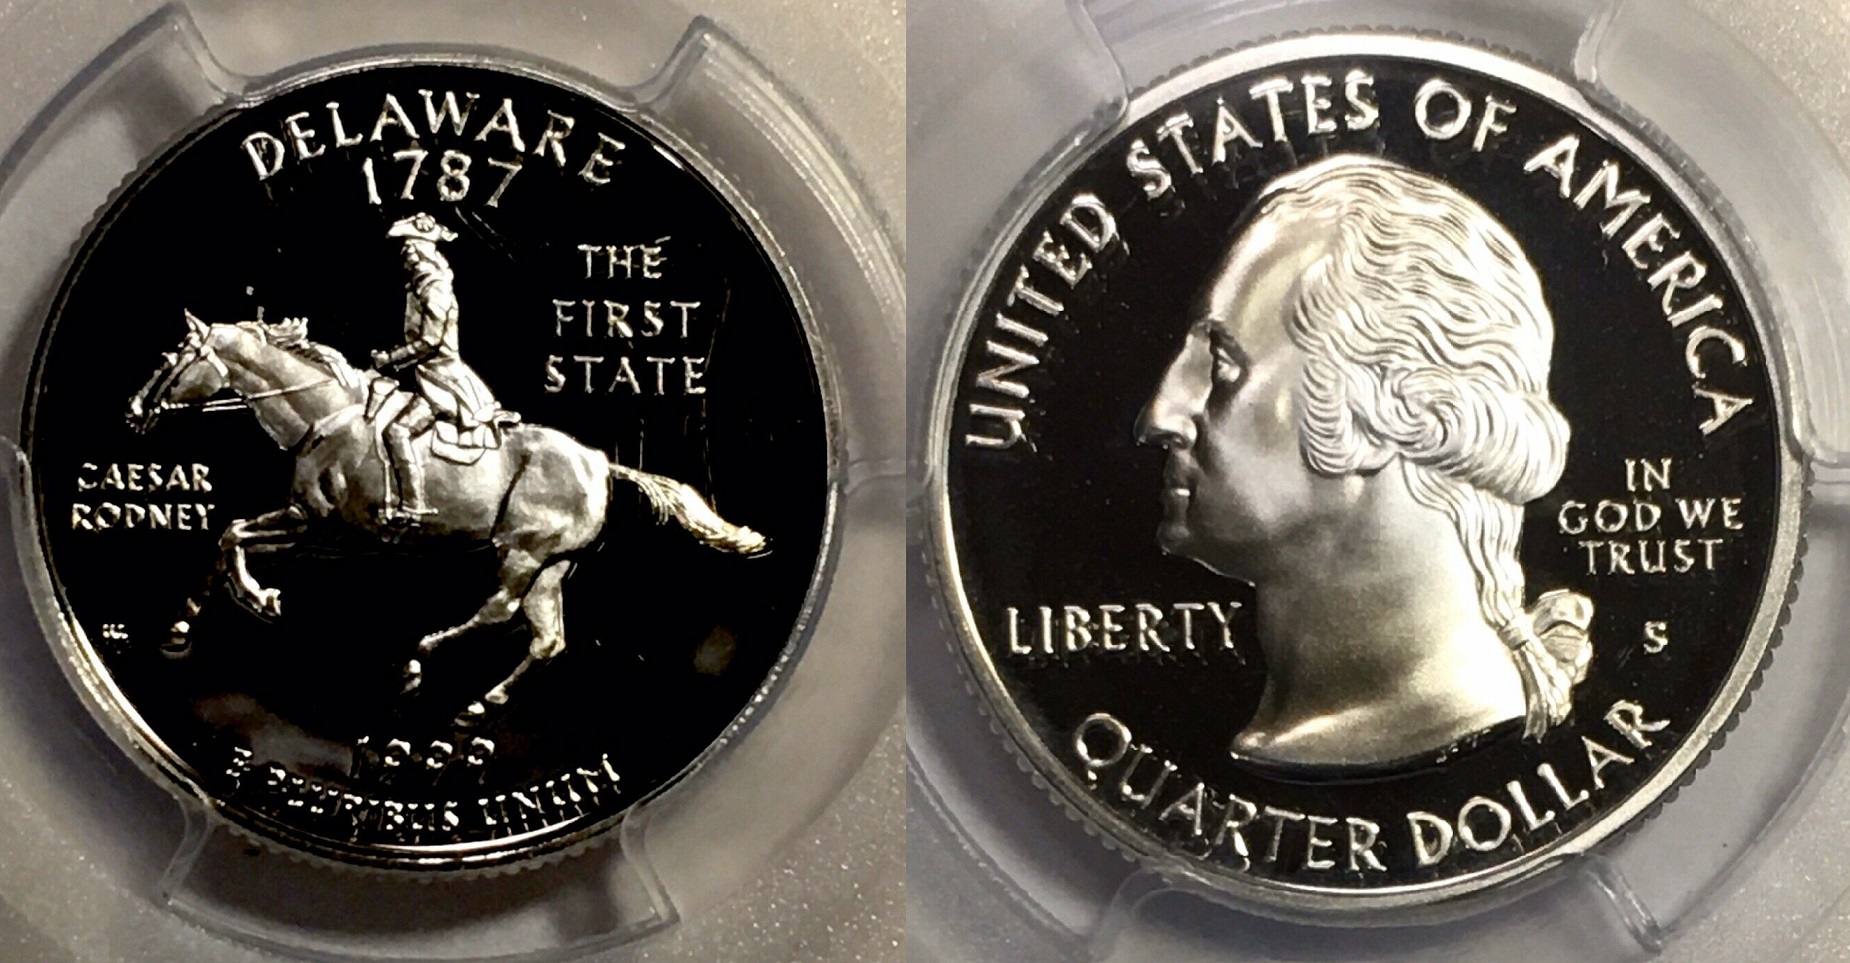 1999-S Delaware Silver State Quarter PCGS Prf-69 DCAM  $20. + $3.  264511467592  coinspotstor o3.jpg